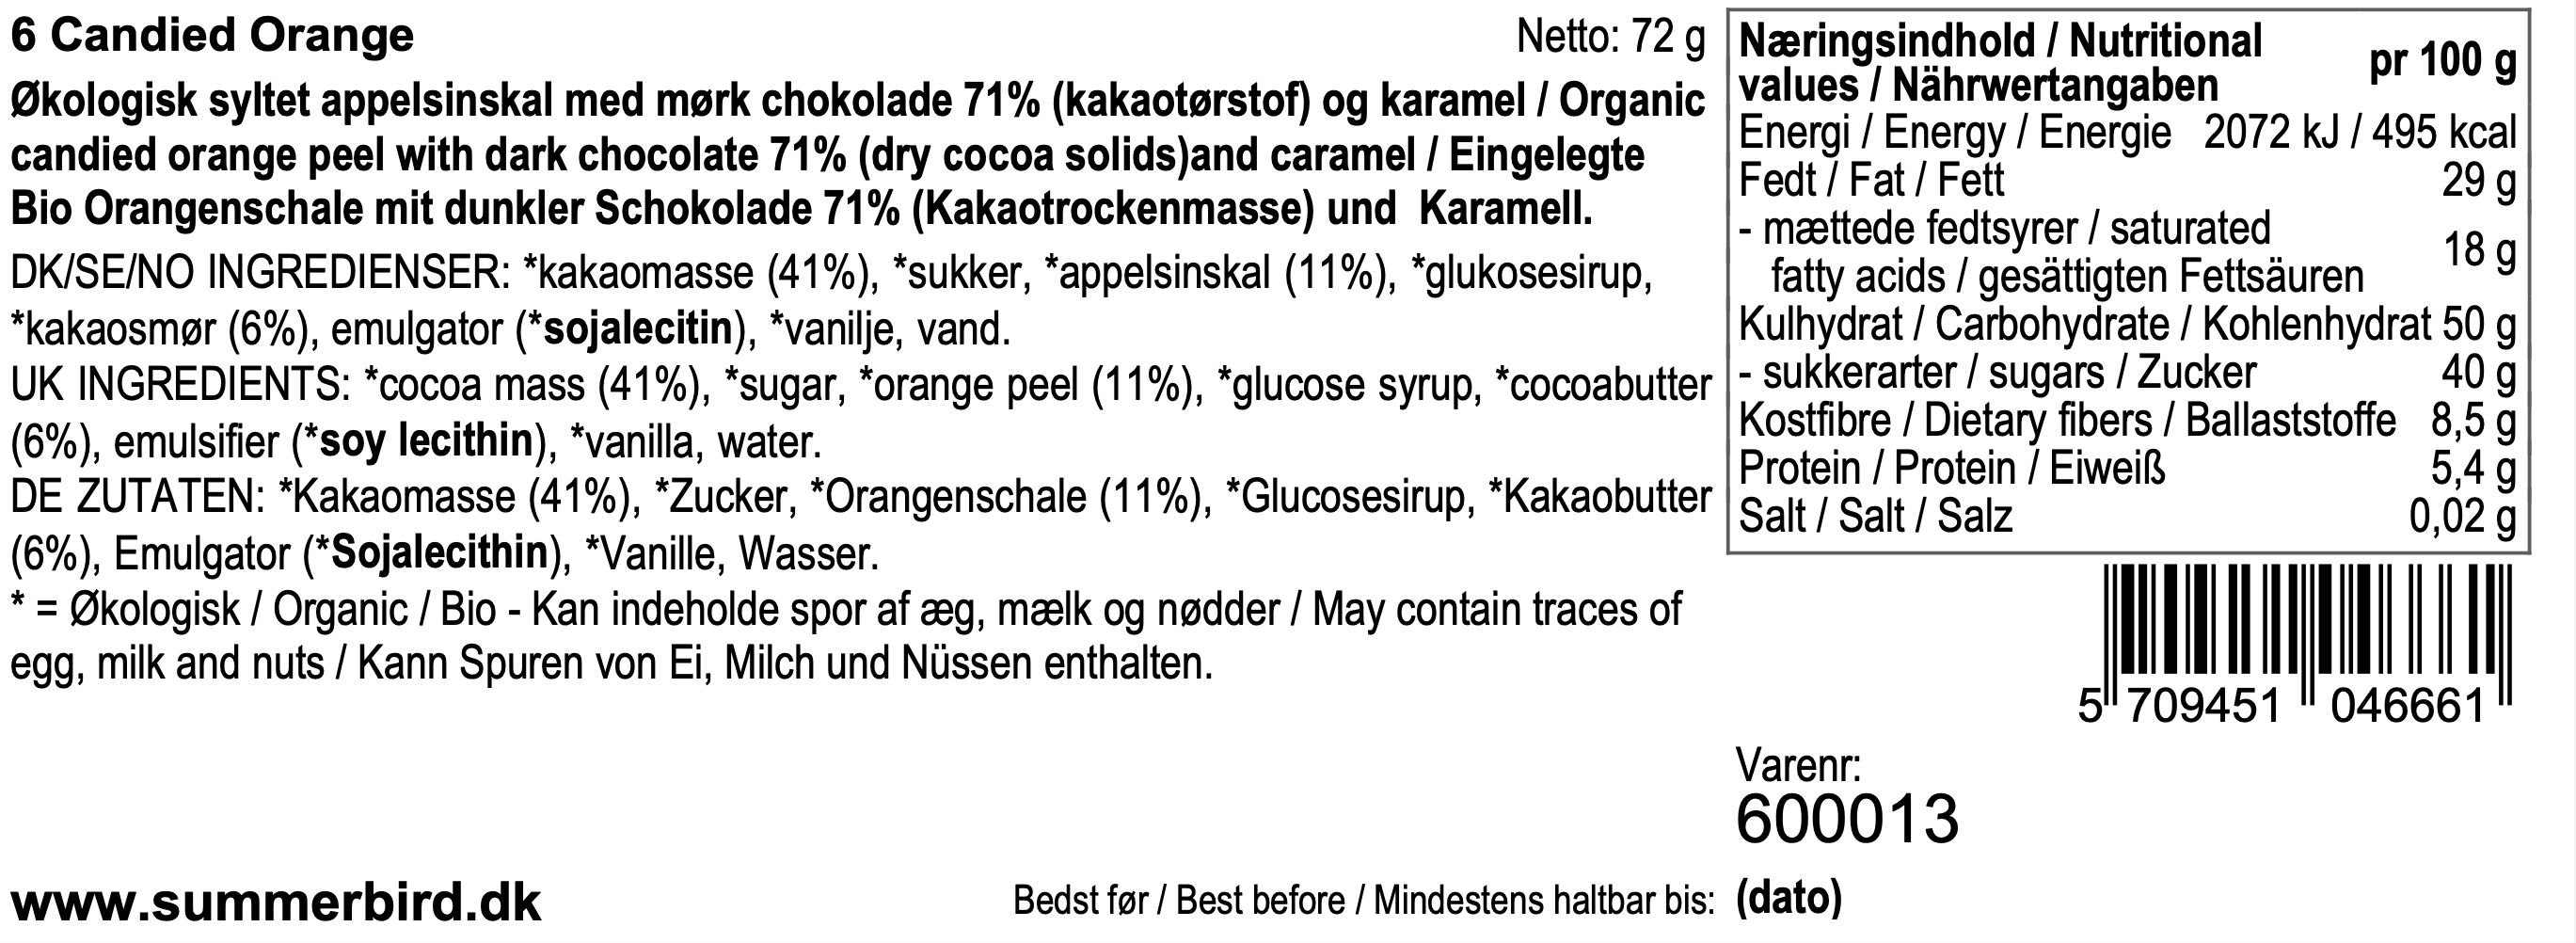 Se ingredienser - 6 Candied Orange